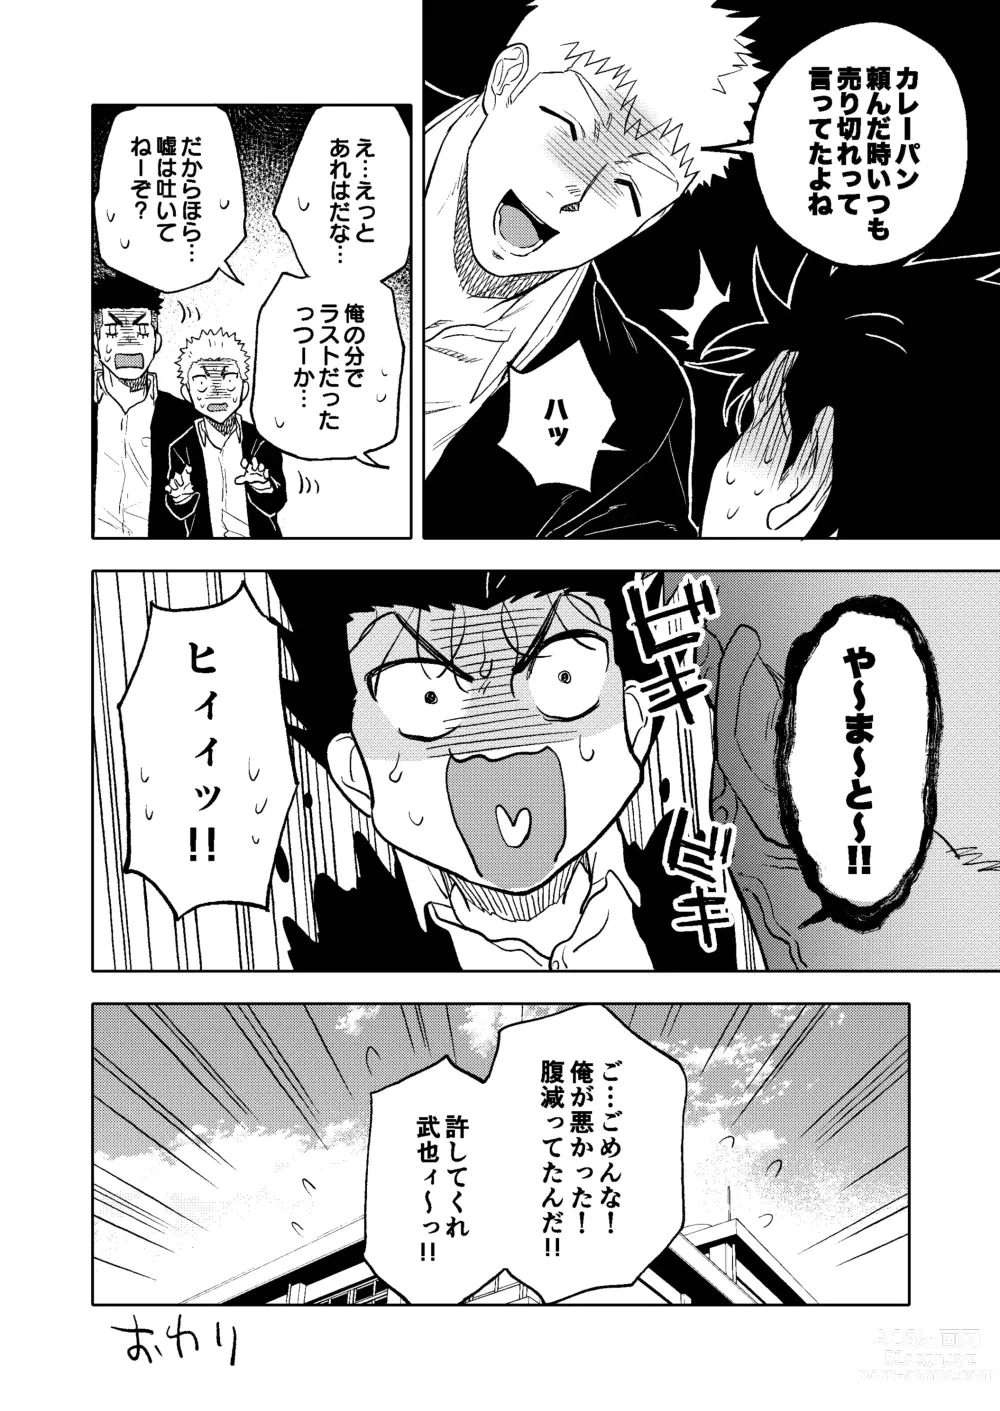 Page 45 of doujinshi Dainarishounari 2